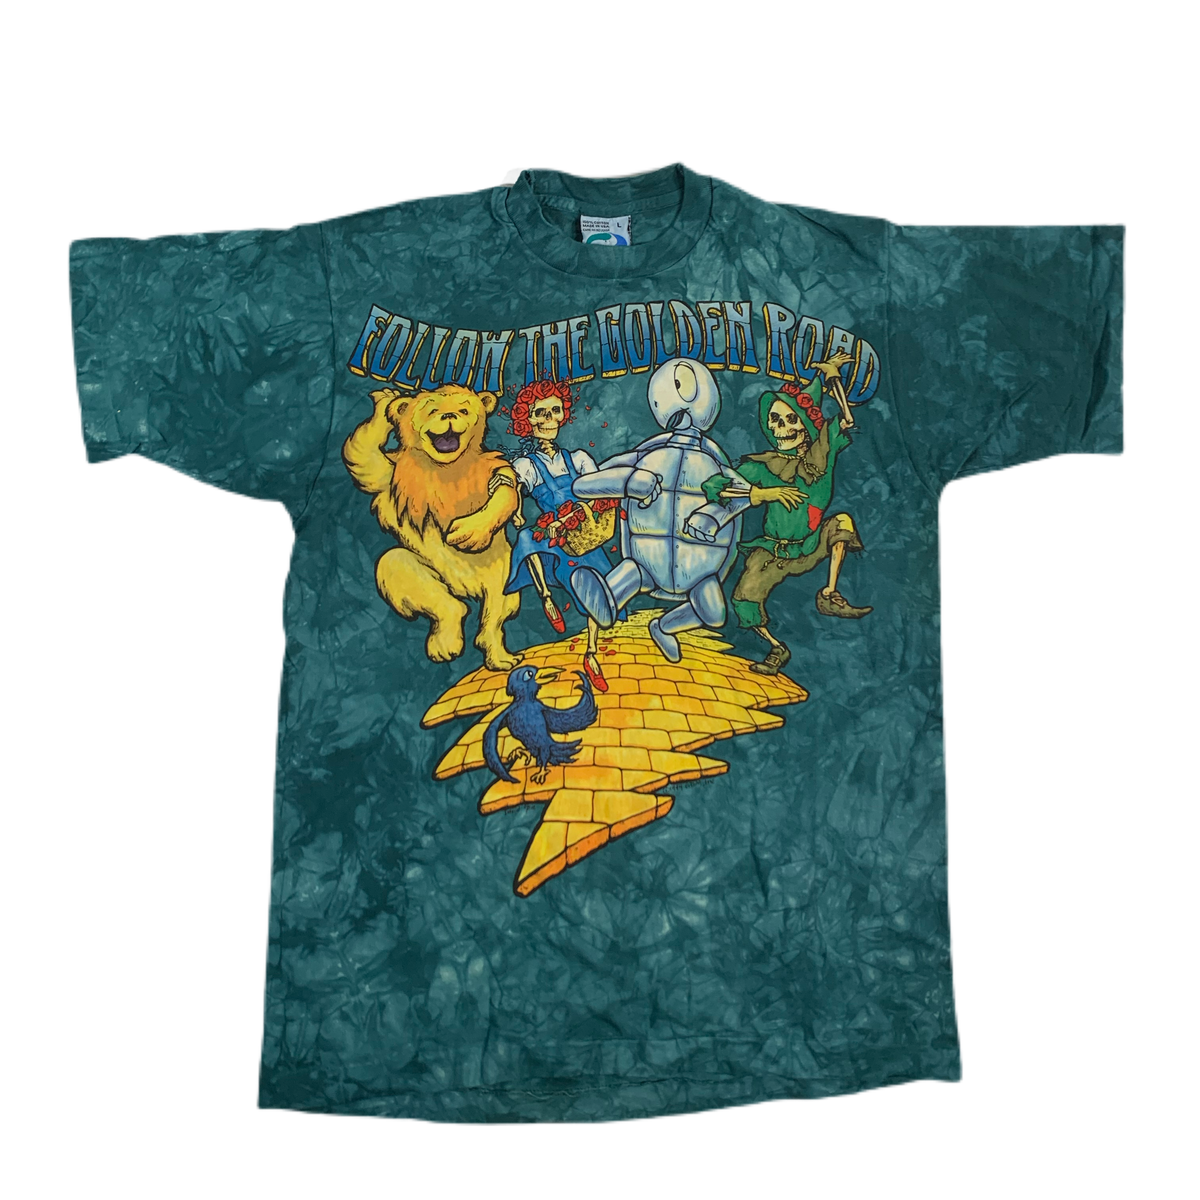 Vintage Grateful Dead &quot;Follow The Golden Road&quot; T-Shirt